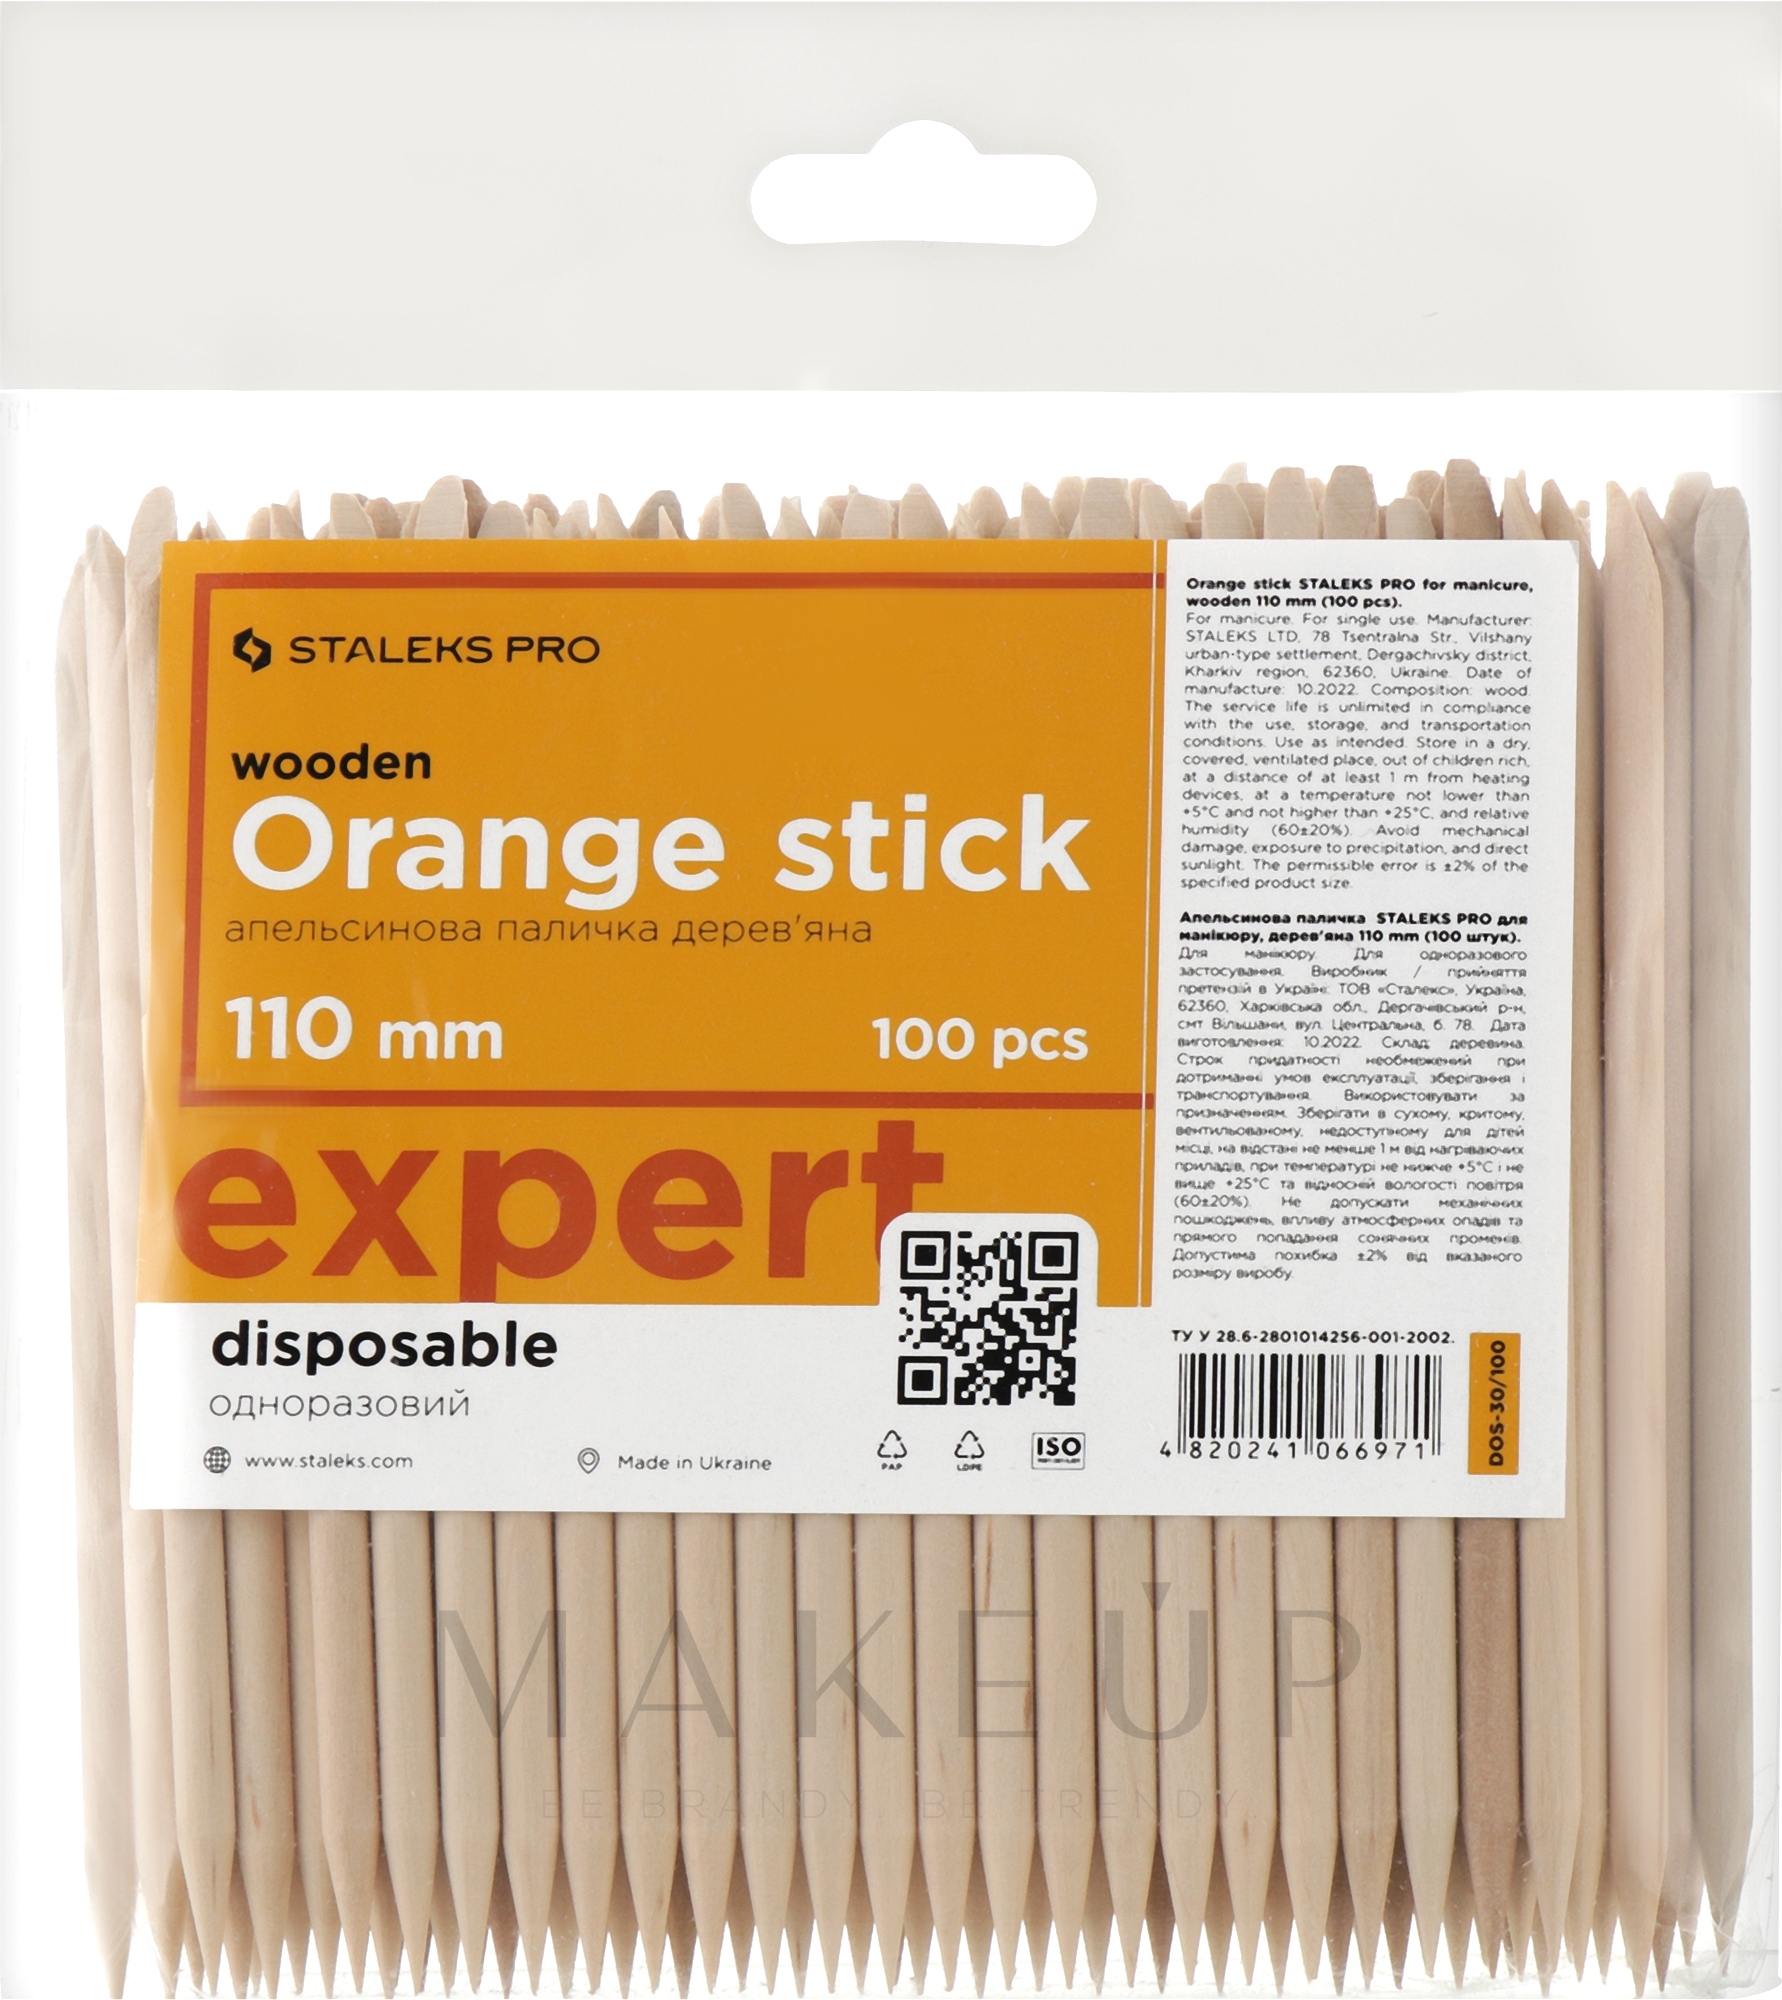 Maniküre-Stäbchen aus Orangenbaum-Holz 110 mm 100 St. - Staleks Pro Expert Wooden Orange Stick — Bild 100 St.